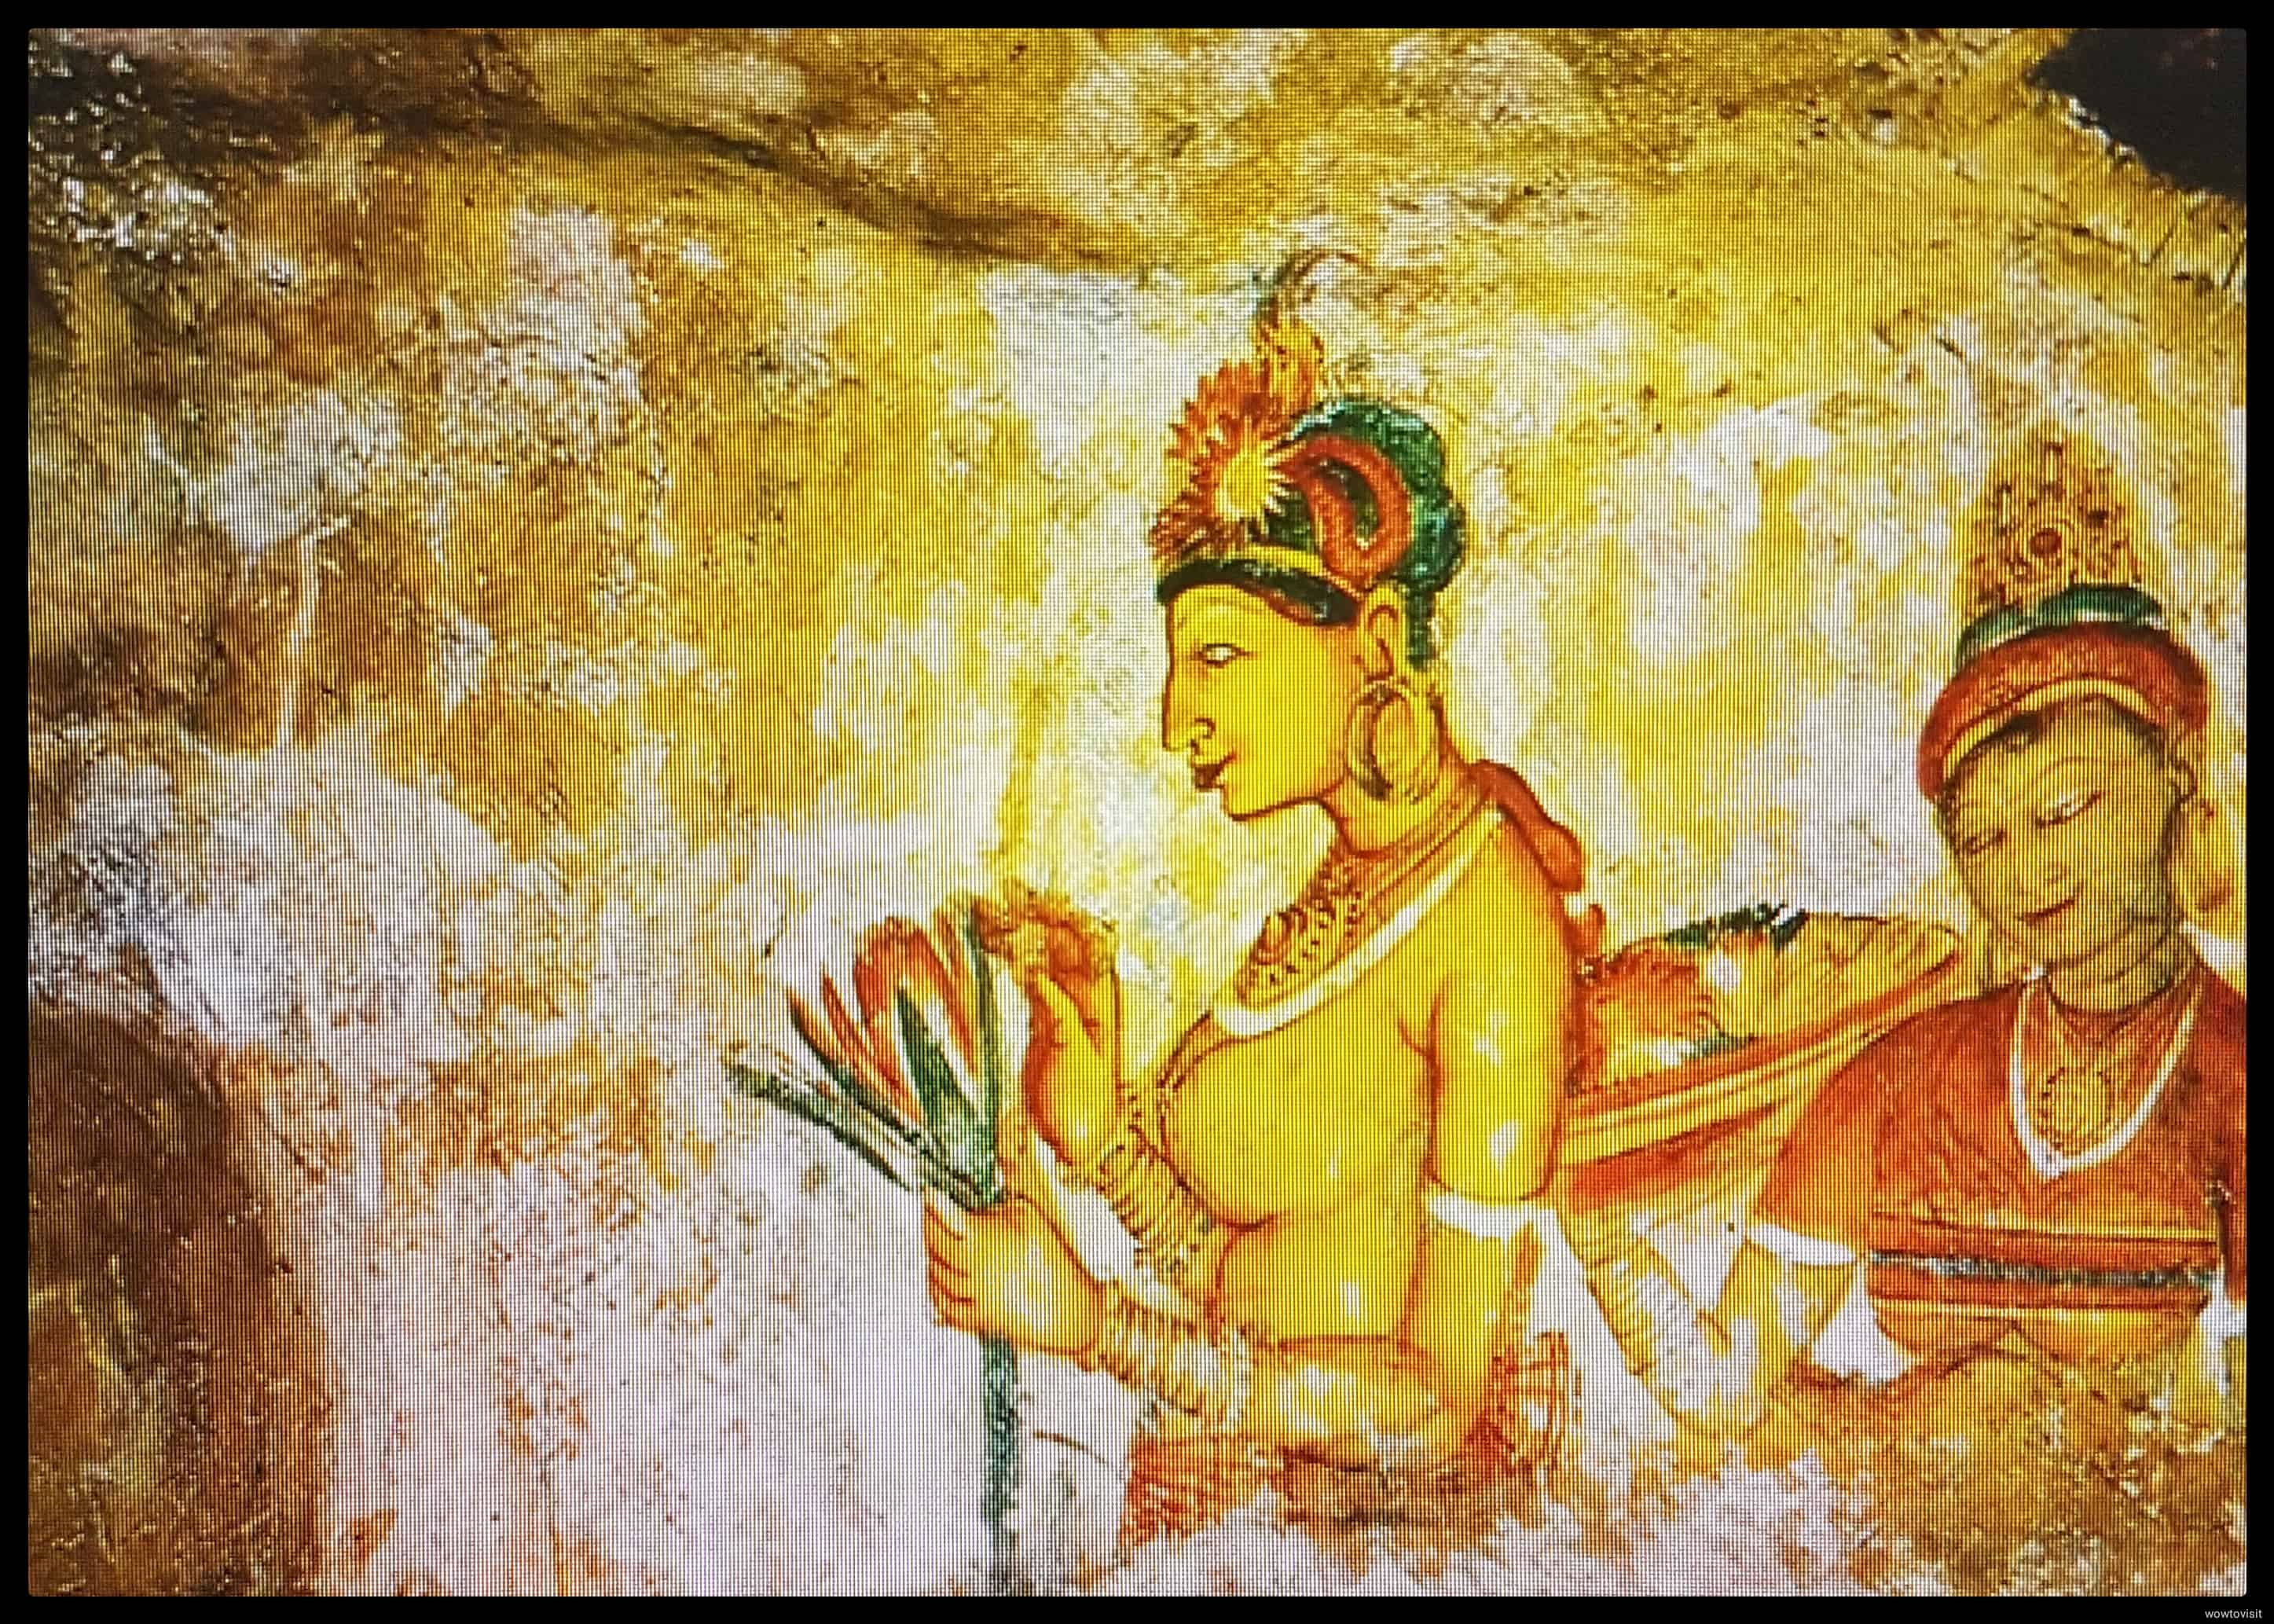 Sigiriya Sri Lanka Frescoes Welcome